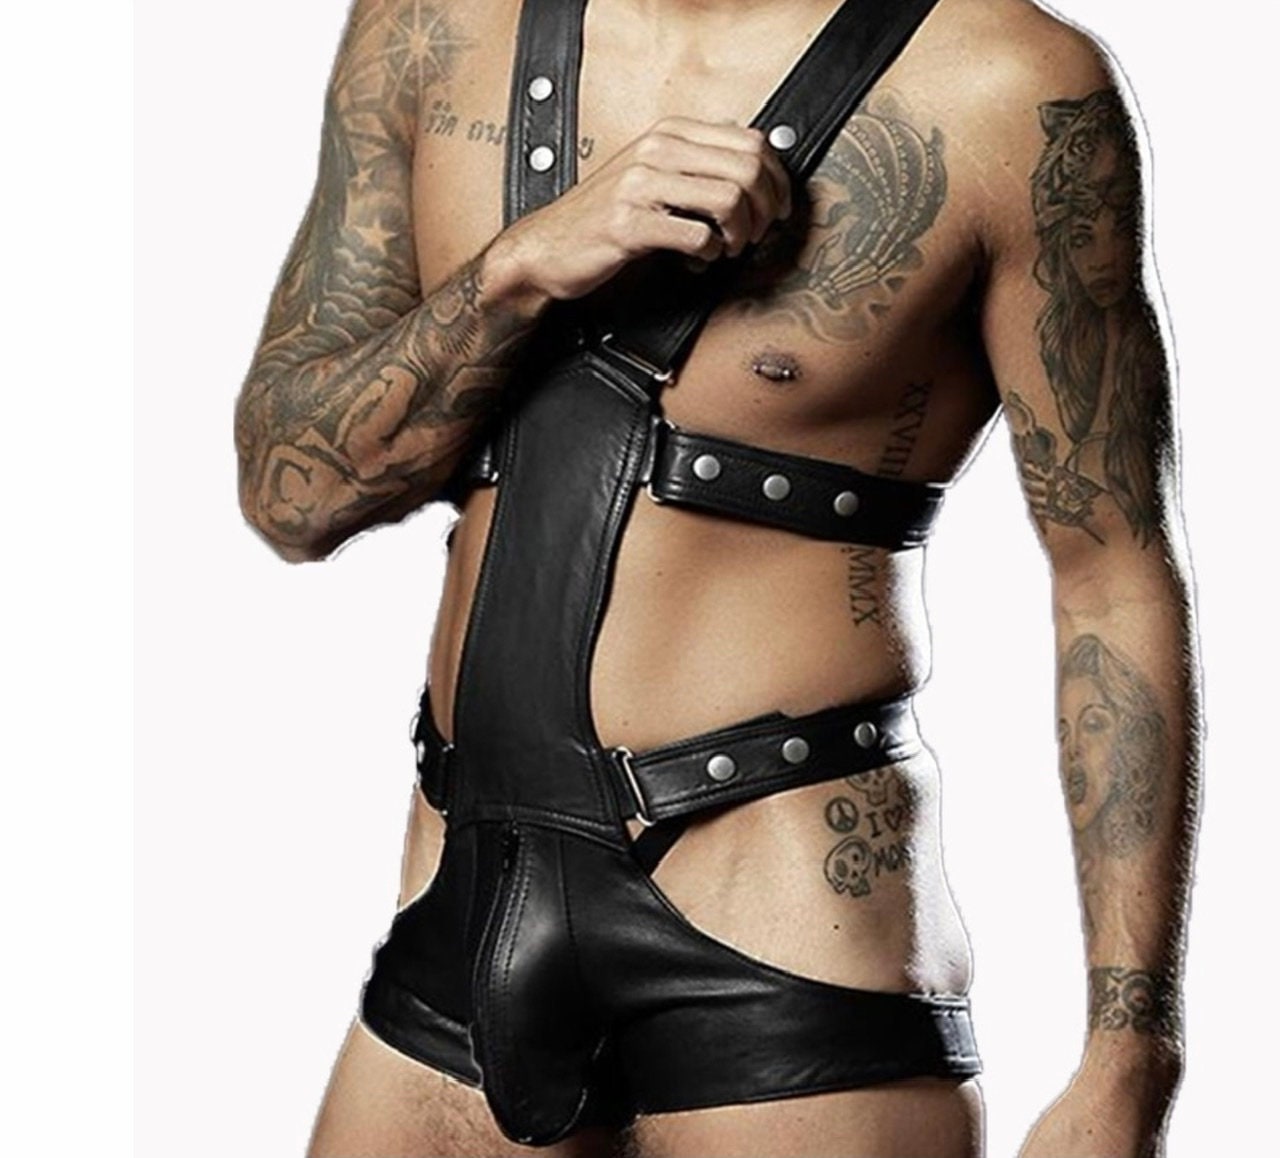 Men Faux Leather Bodysuit Exotic Fetish Bondage Restraint Lingerie Black Fantasy Gay Jumpsuit Teddy Vinyl Sex Underwear - NansUniqueShop4Men